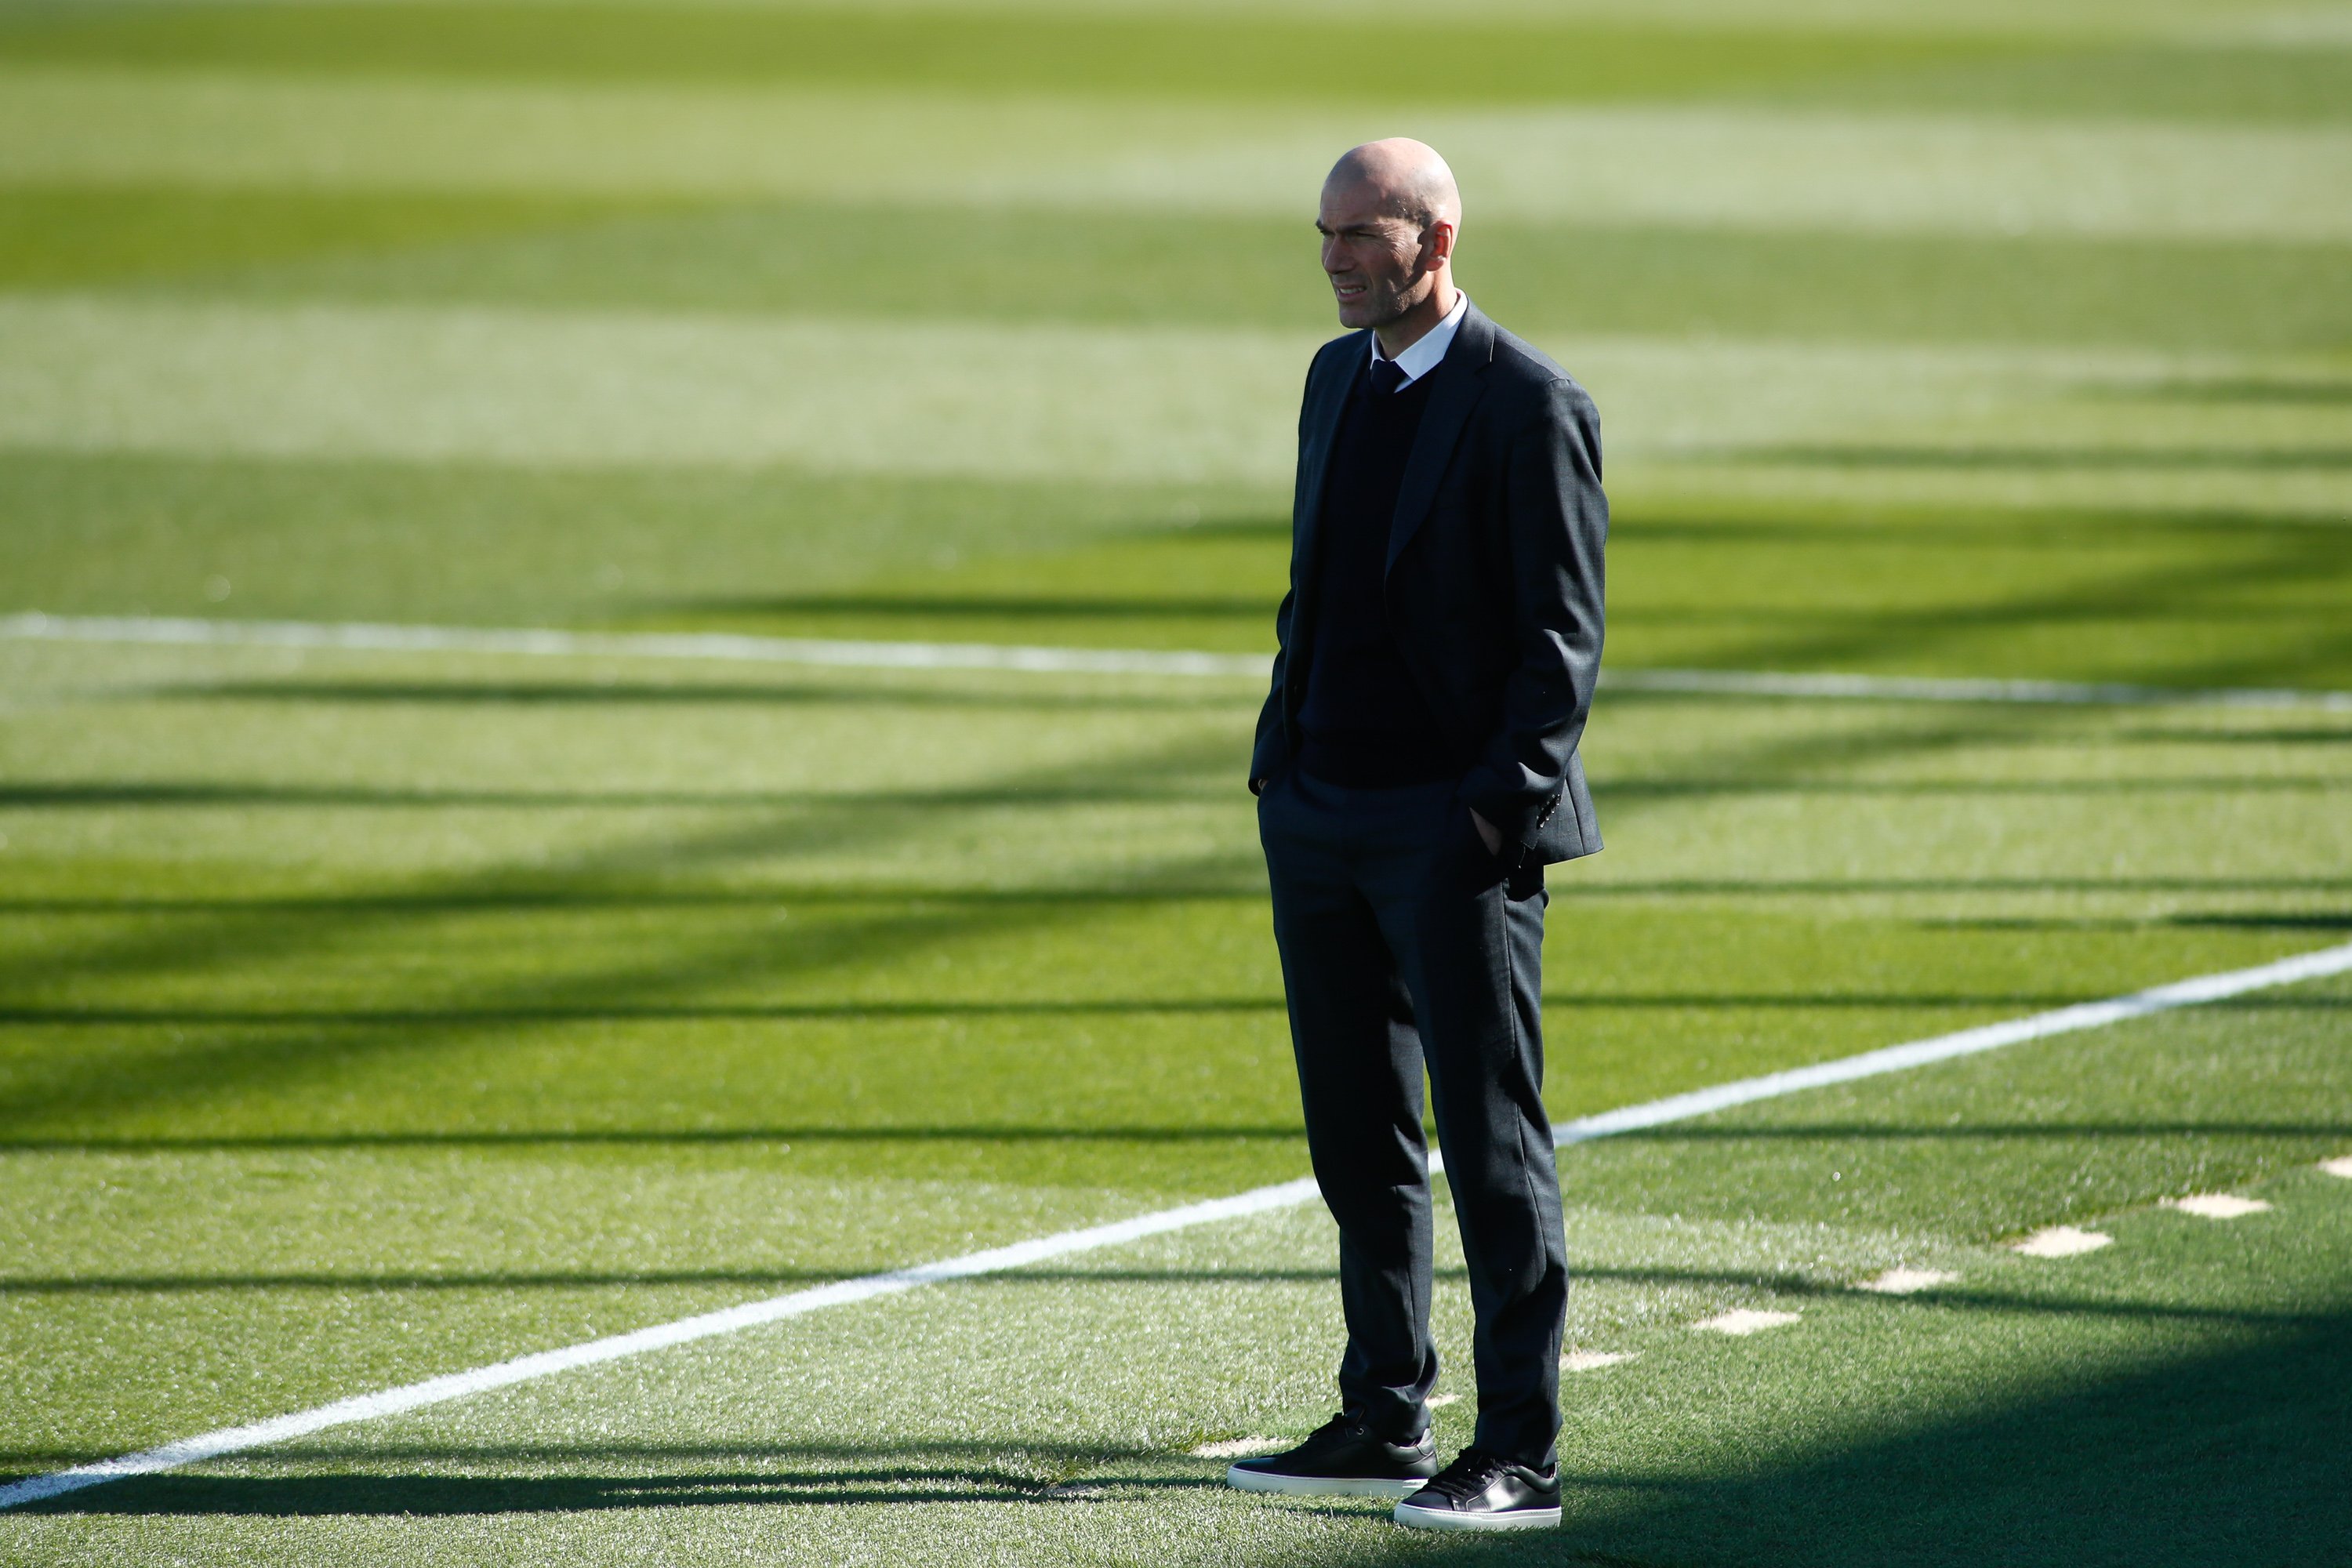 Sueño de Zidane directo al Real Madrid por la crisis en el Bayern de Tuchel, pólvora para el tridente